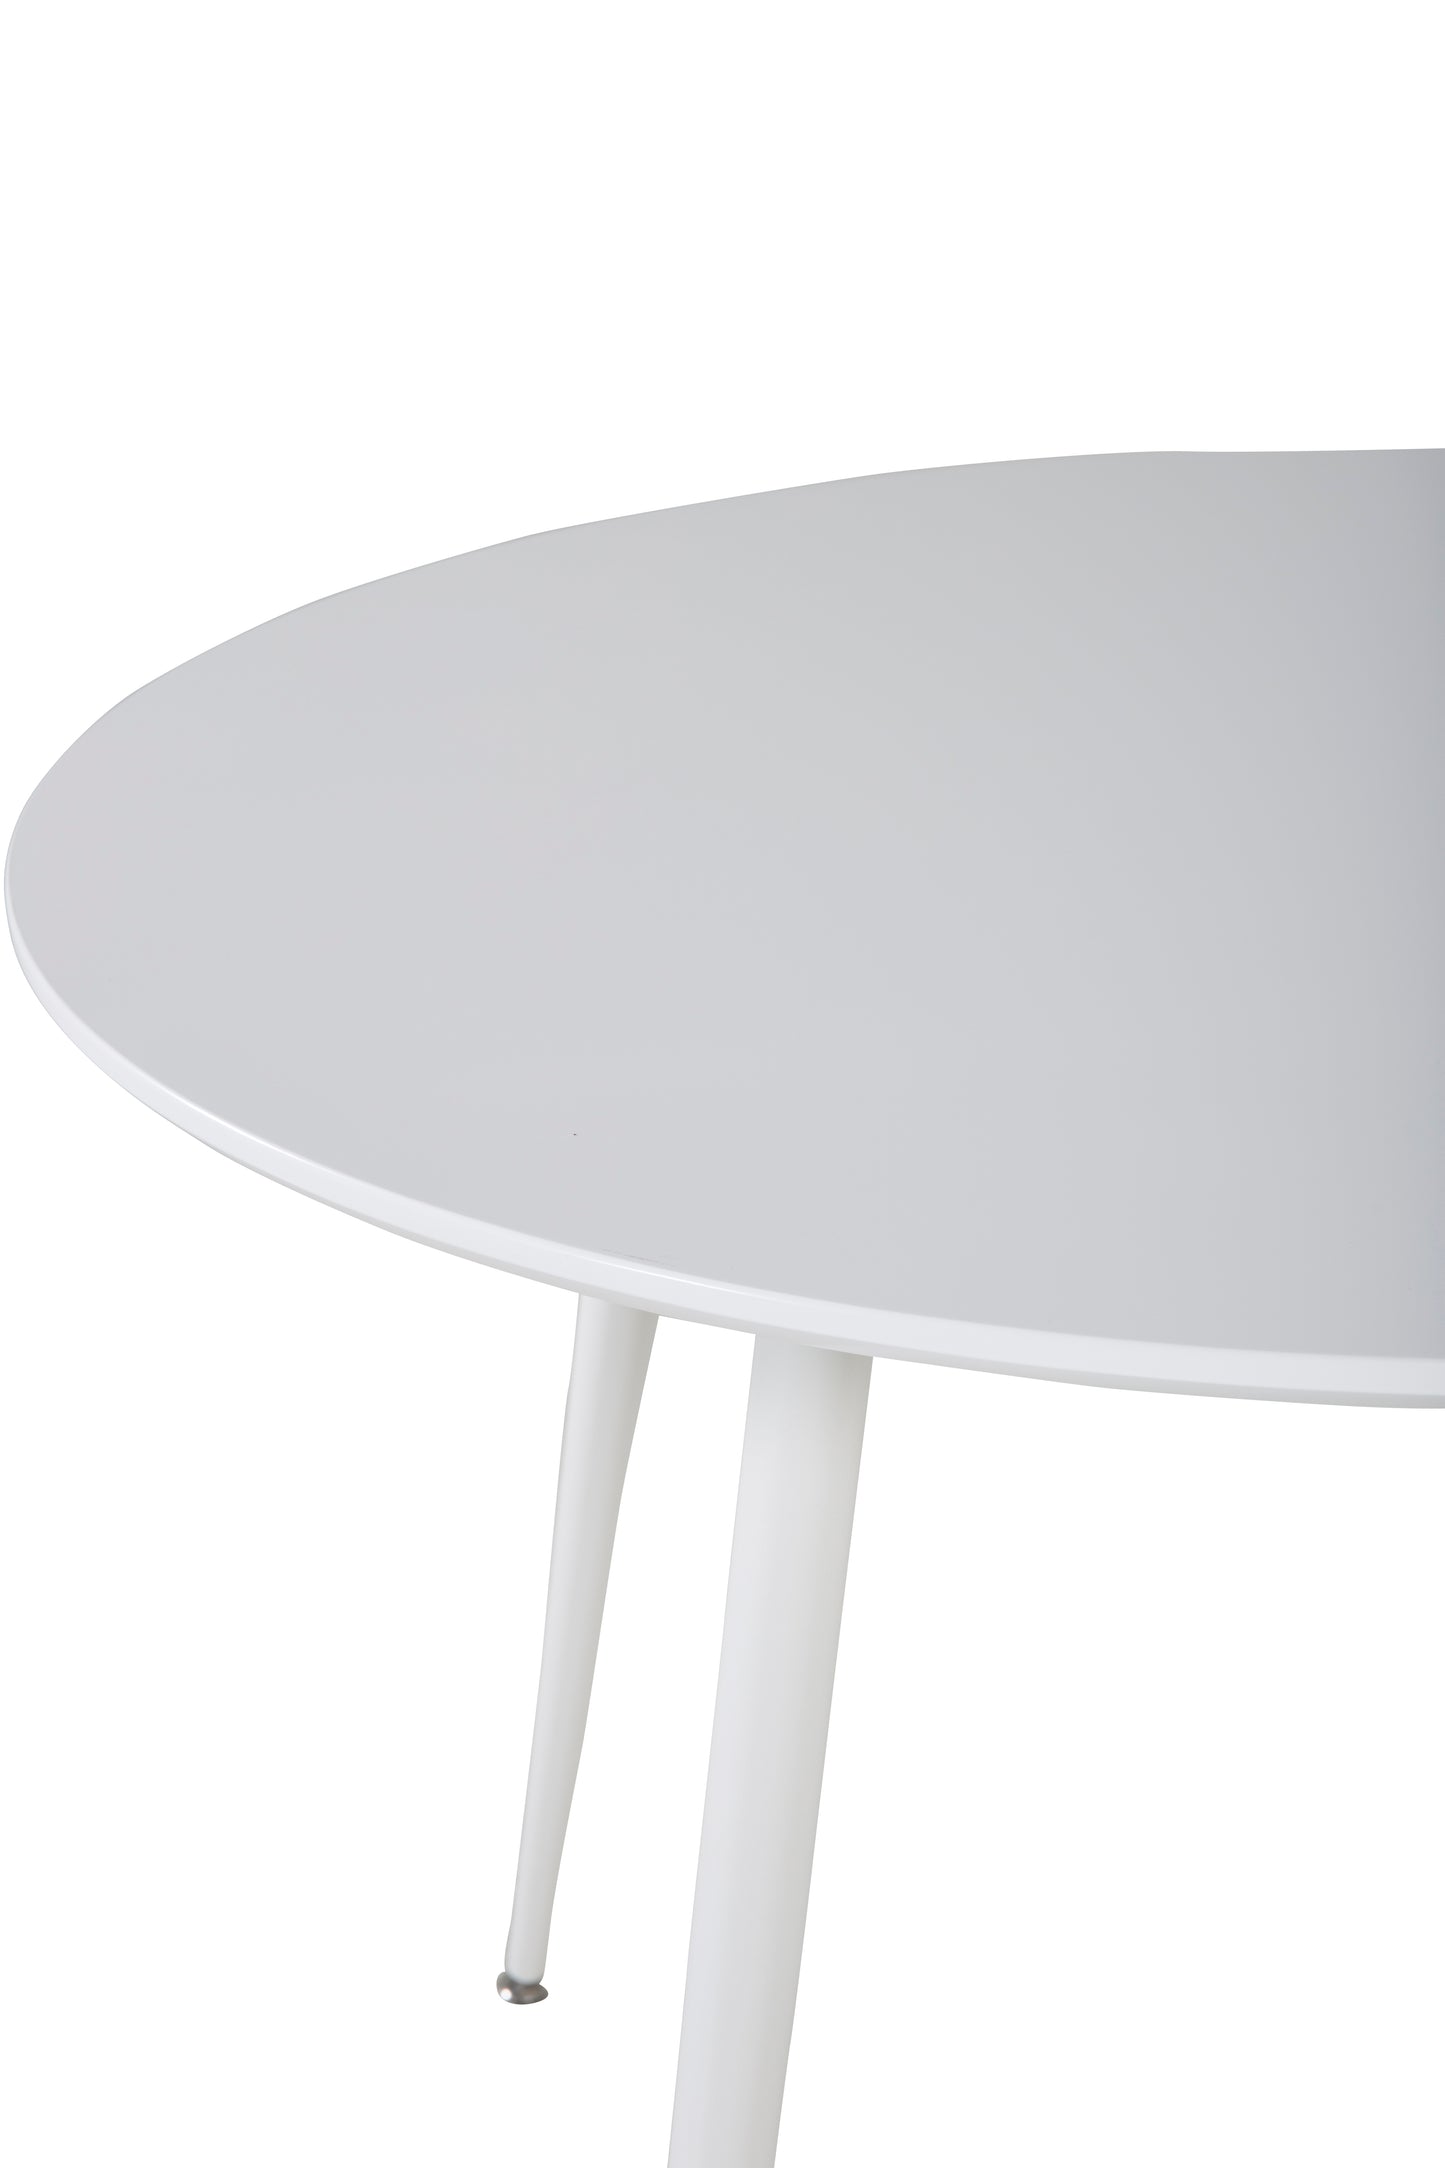 Venture-Design | Plaza - Runder Tisch 100 cm - Weiße Platte / Weiße Beine